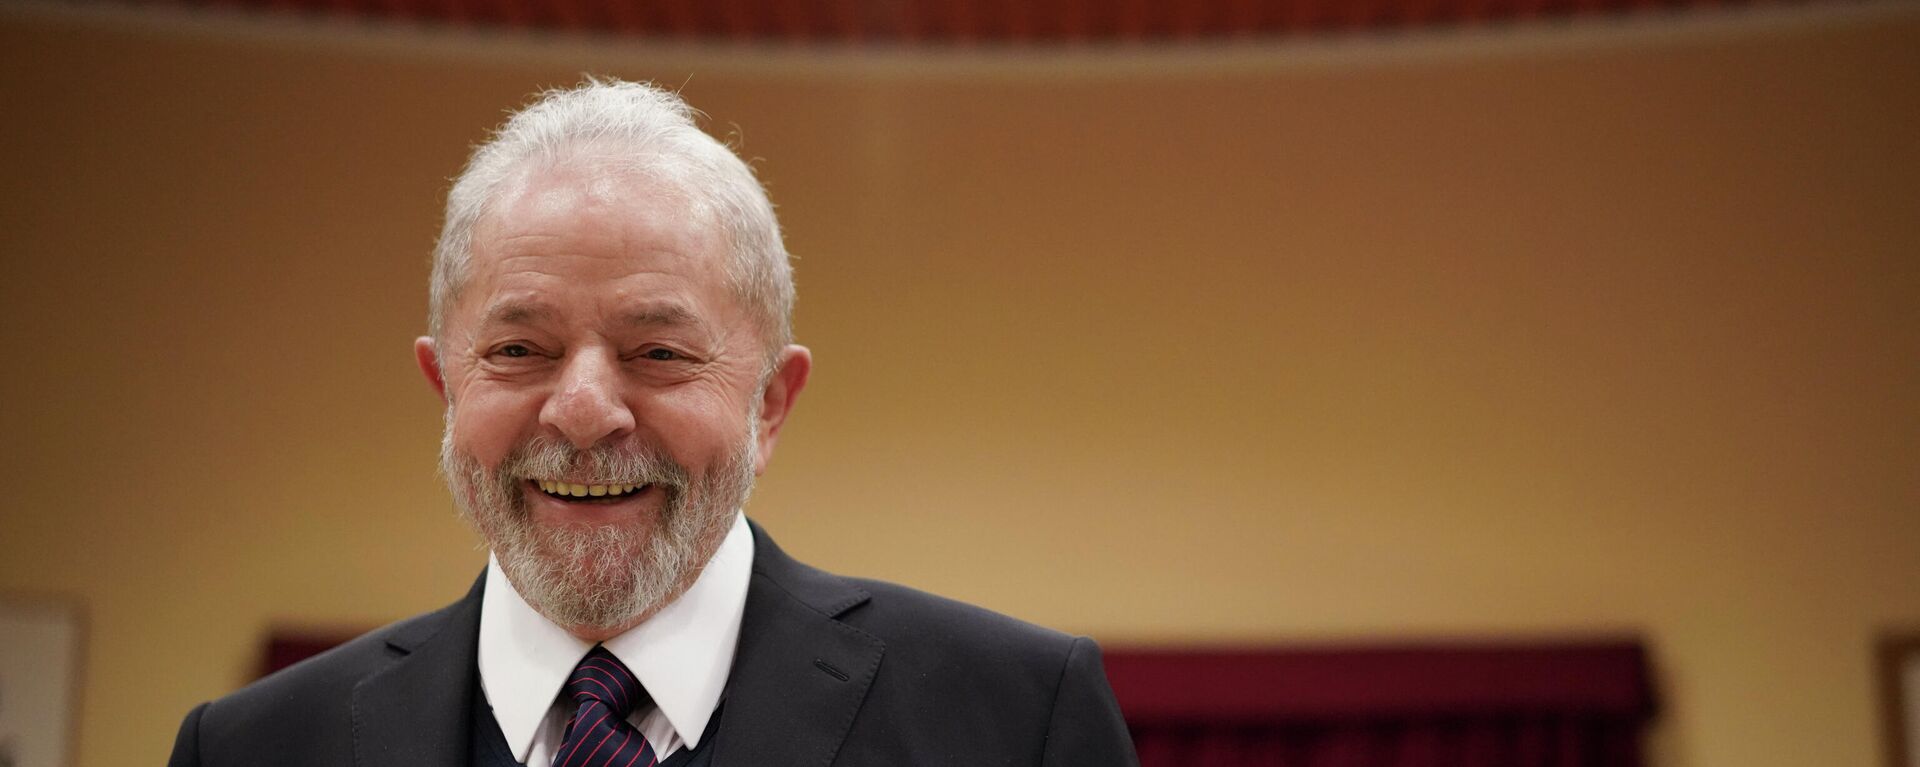 O ex-presidente brasileiro Luiz Inácio Lula da Silva sorri ao chegar para uma reunião com o sindicato italiano Cgil, em Roma, quinta-feira, 13 de fevereiro de 2020 - Sputnik Brasil, 1920, 14.12.2021